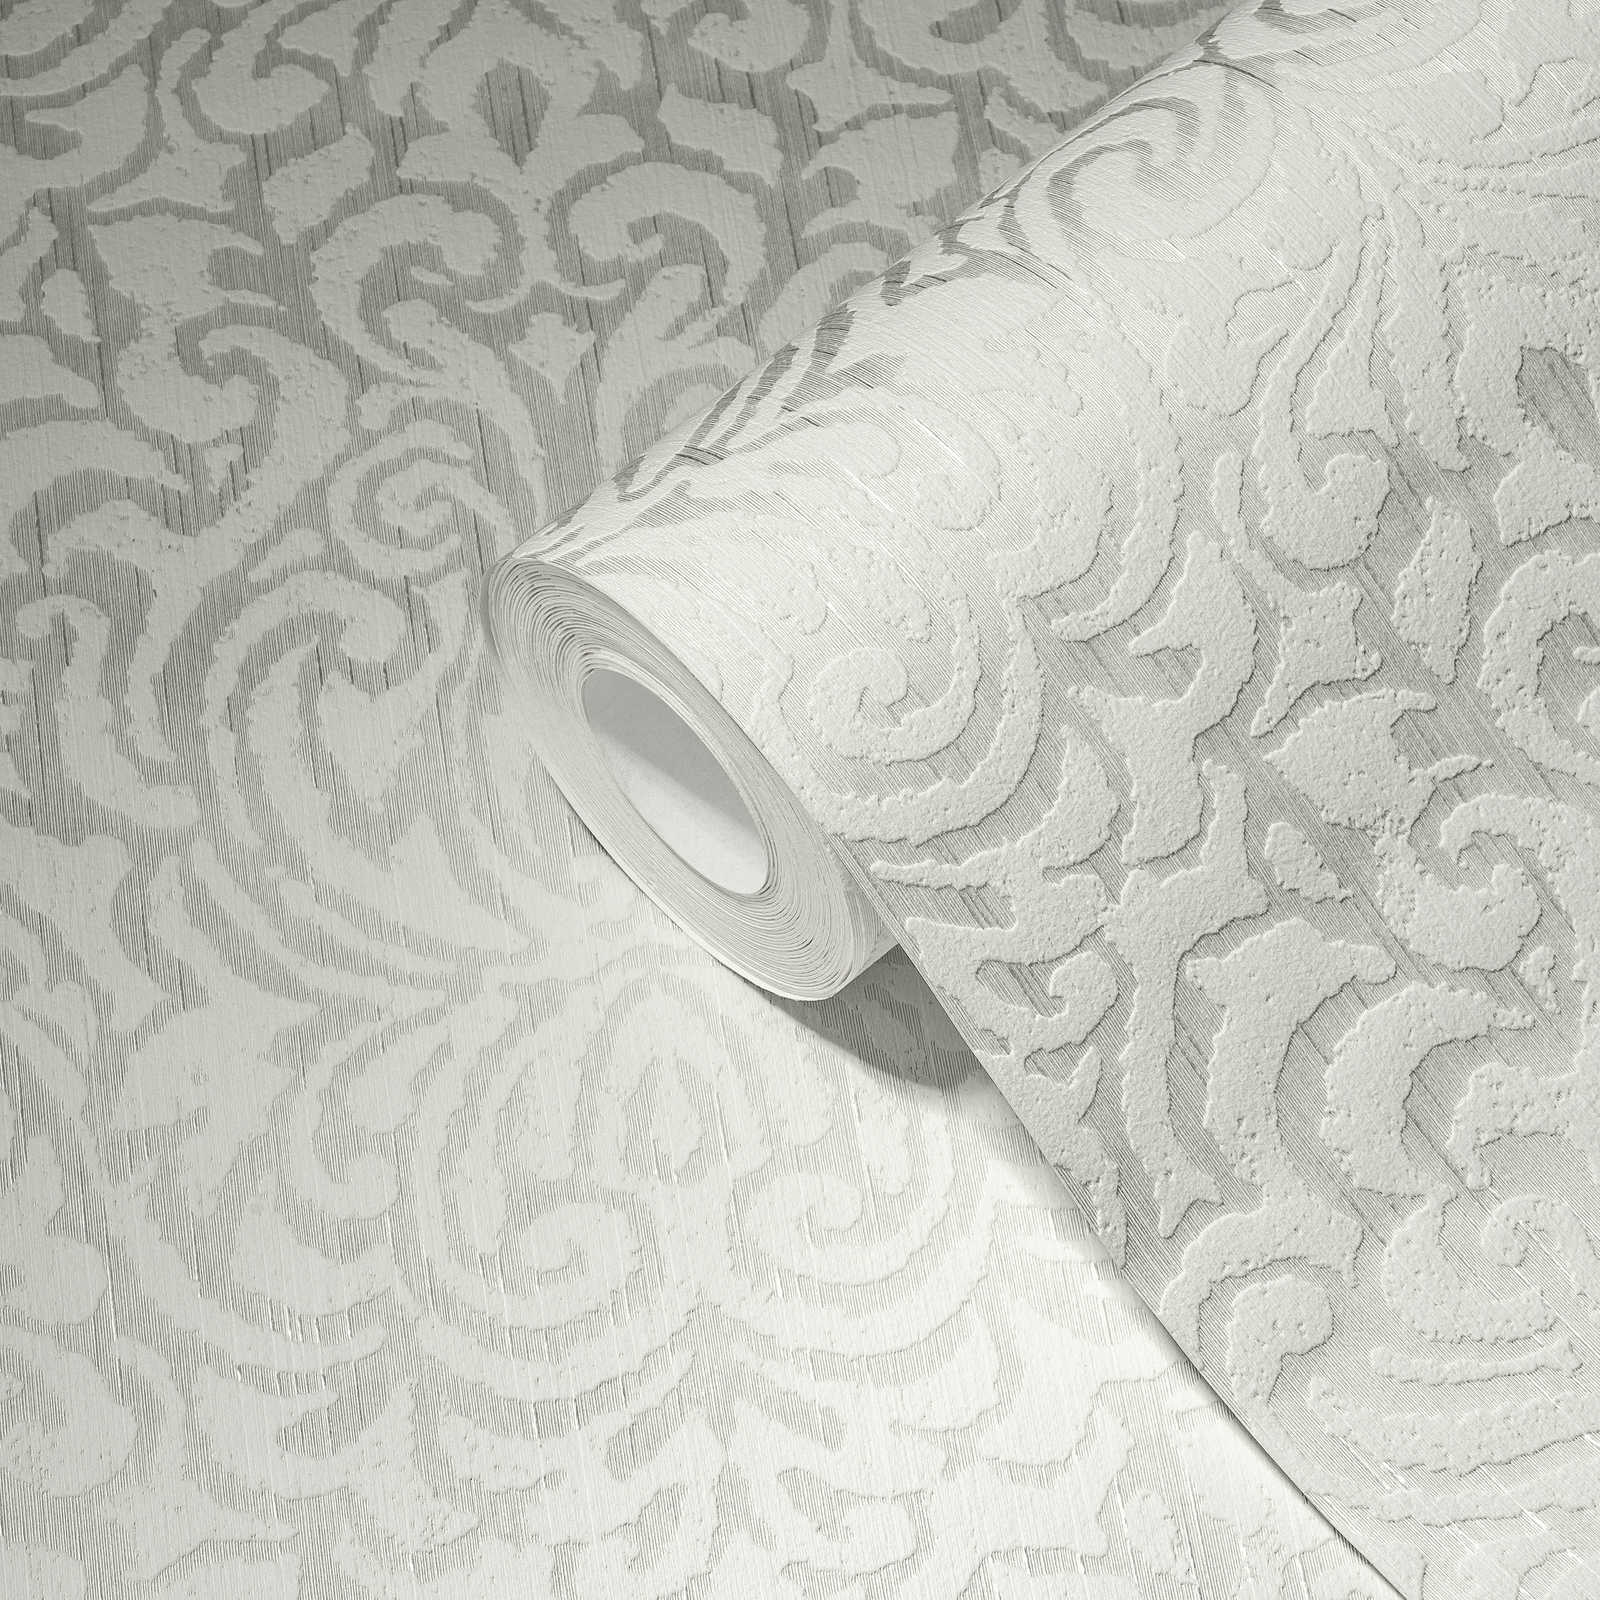             Tapete mit Ornamentmuster und Struktureffekt – Weiß
        